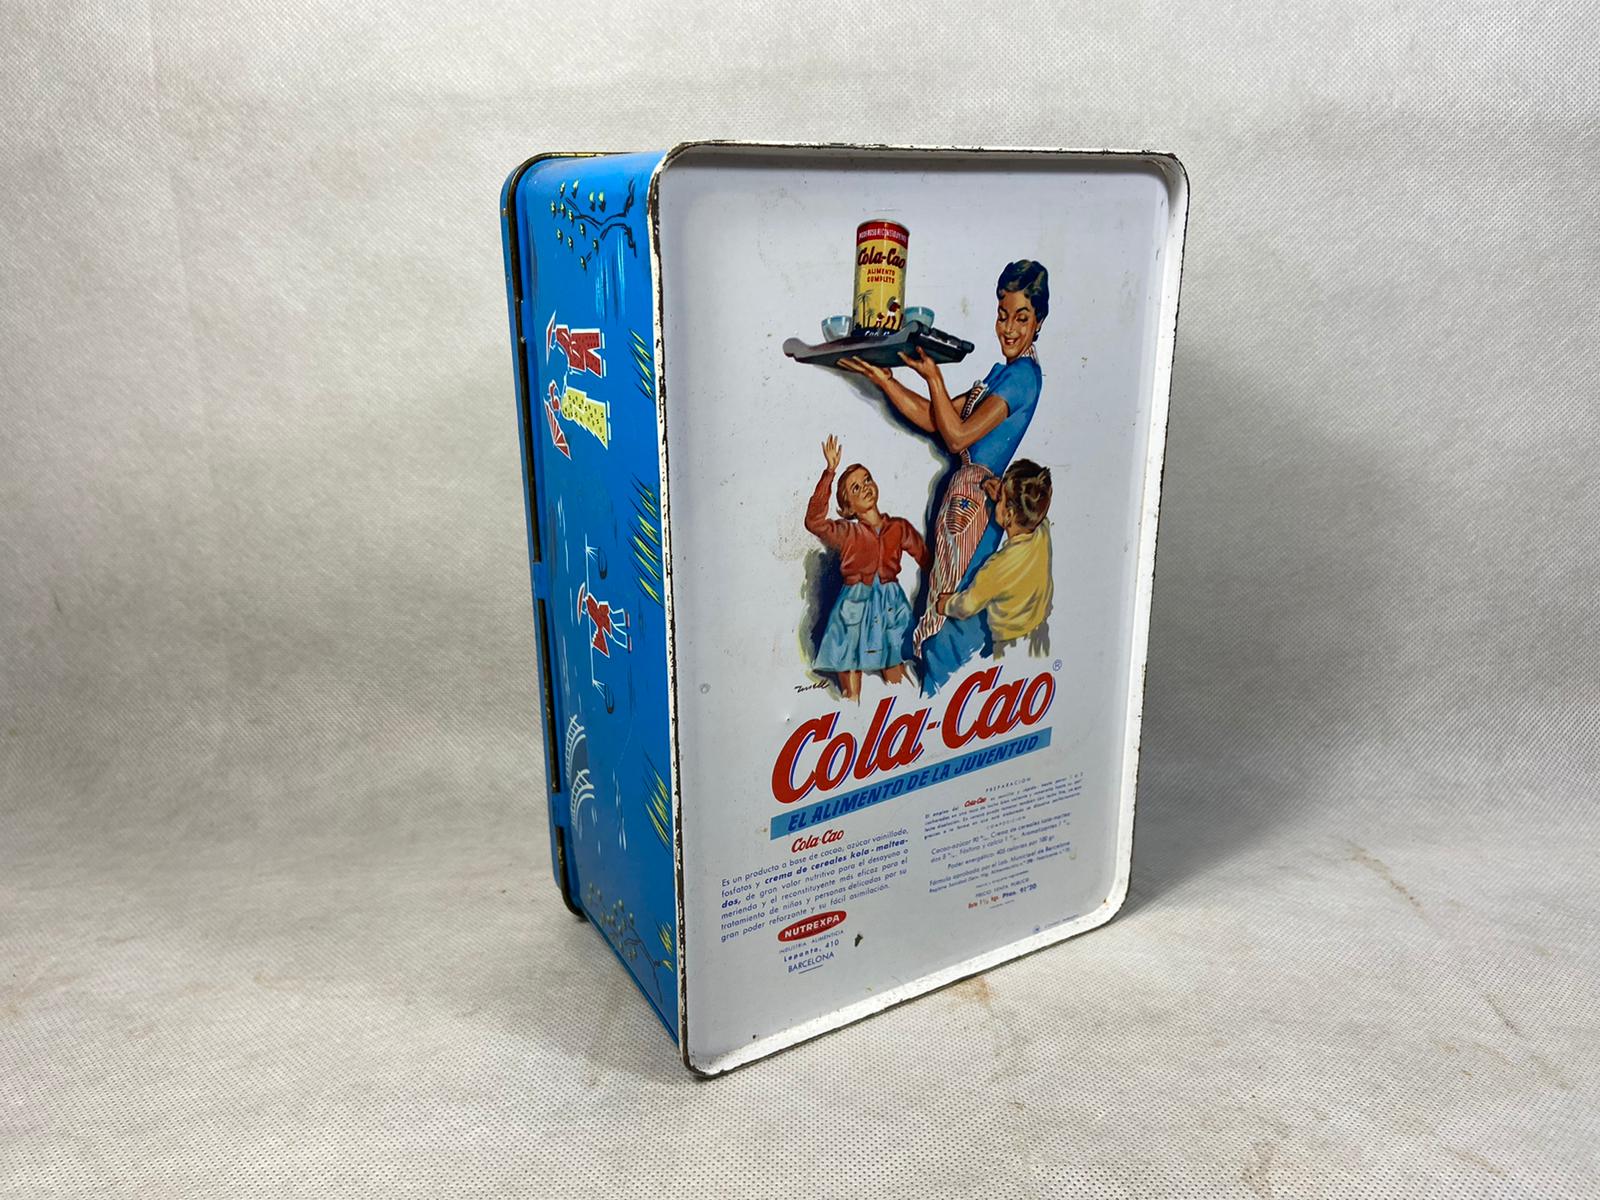 Tienda Online venta de Cola Cao original